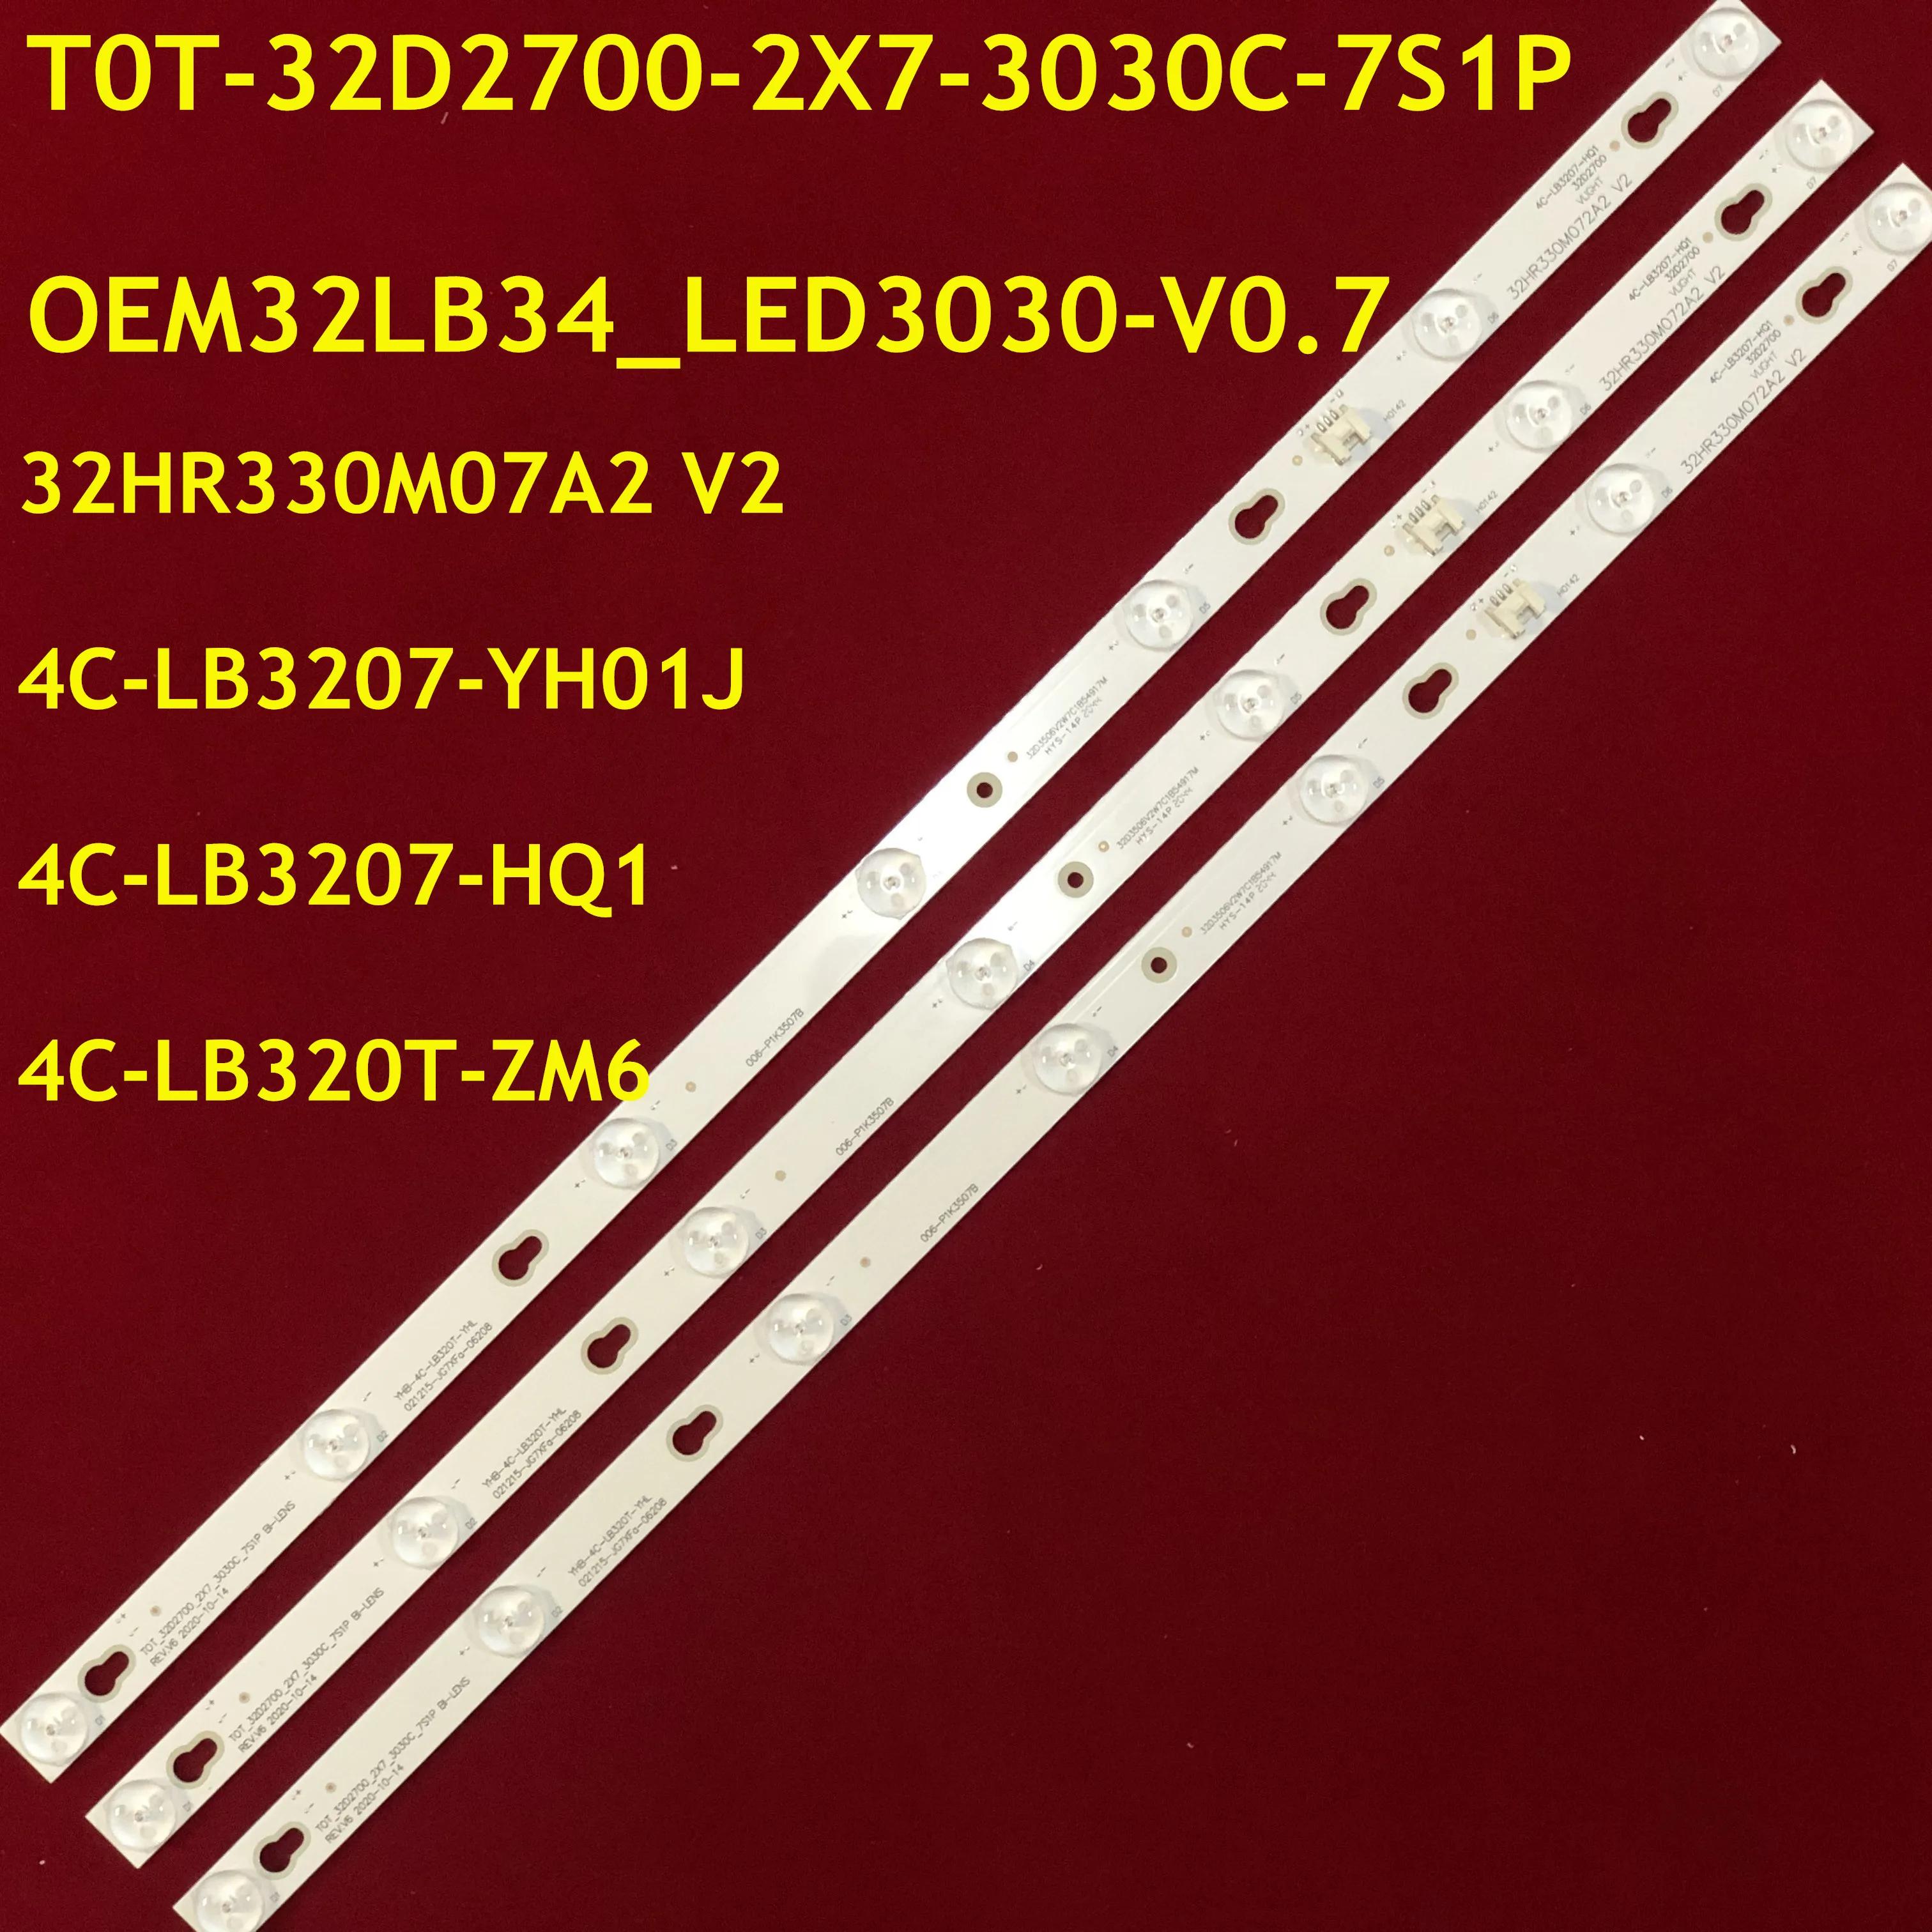 LED Ʈ Ʈ, 32D2700, 4C-LB320T-ZM6, 4C-LB3207-HQ1, L32F1610B, L32F1620B, L32F1680B, L32F1681B, L32F3301B, L32F3303